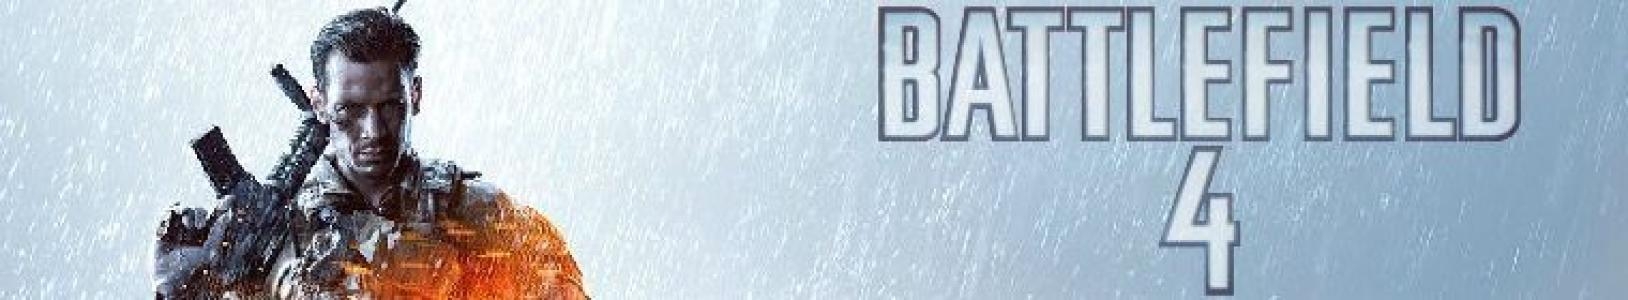 Battlefield 4 banner